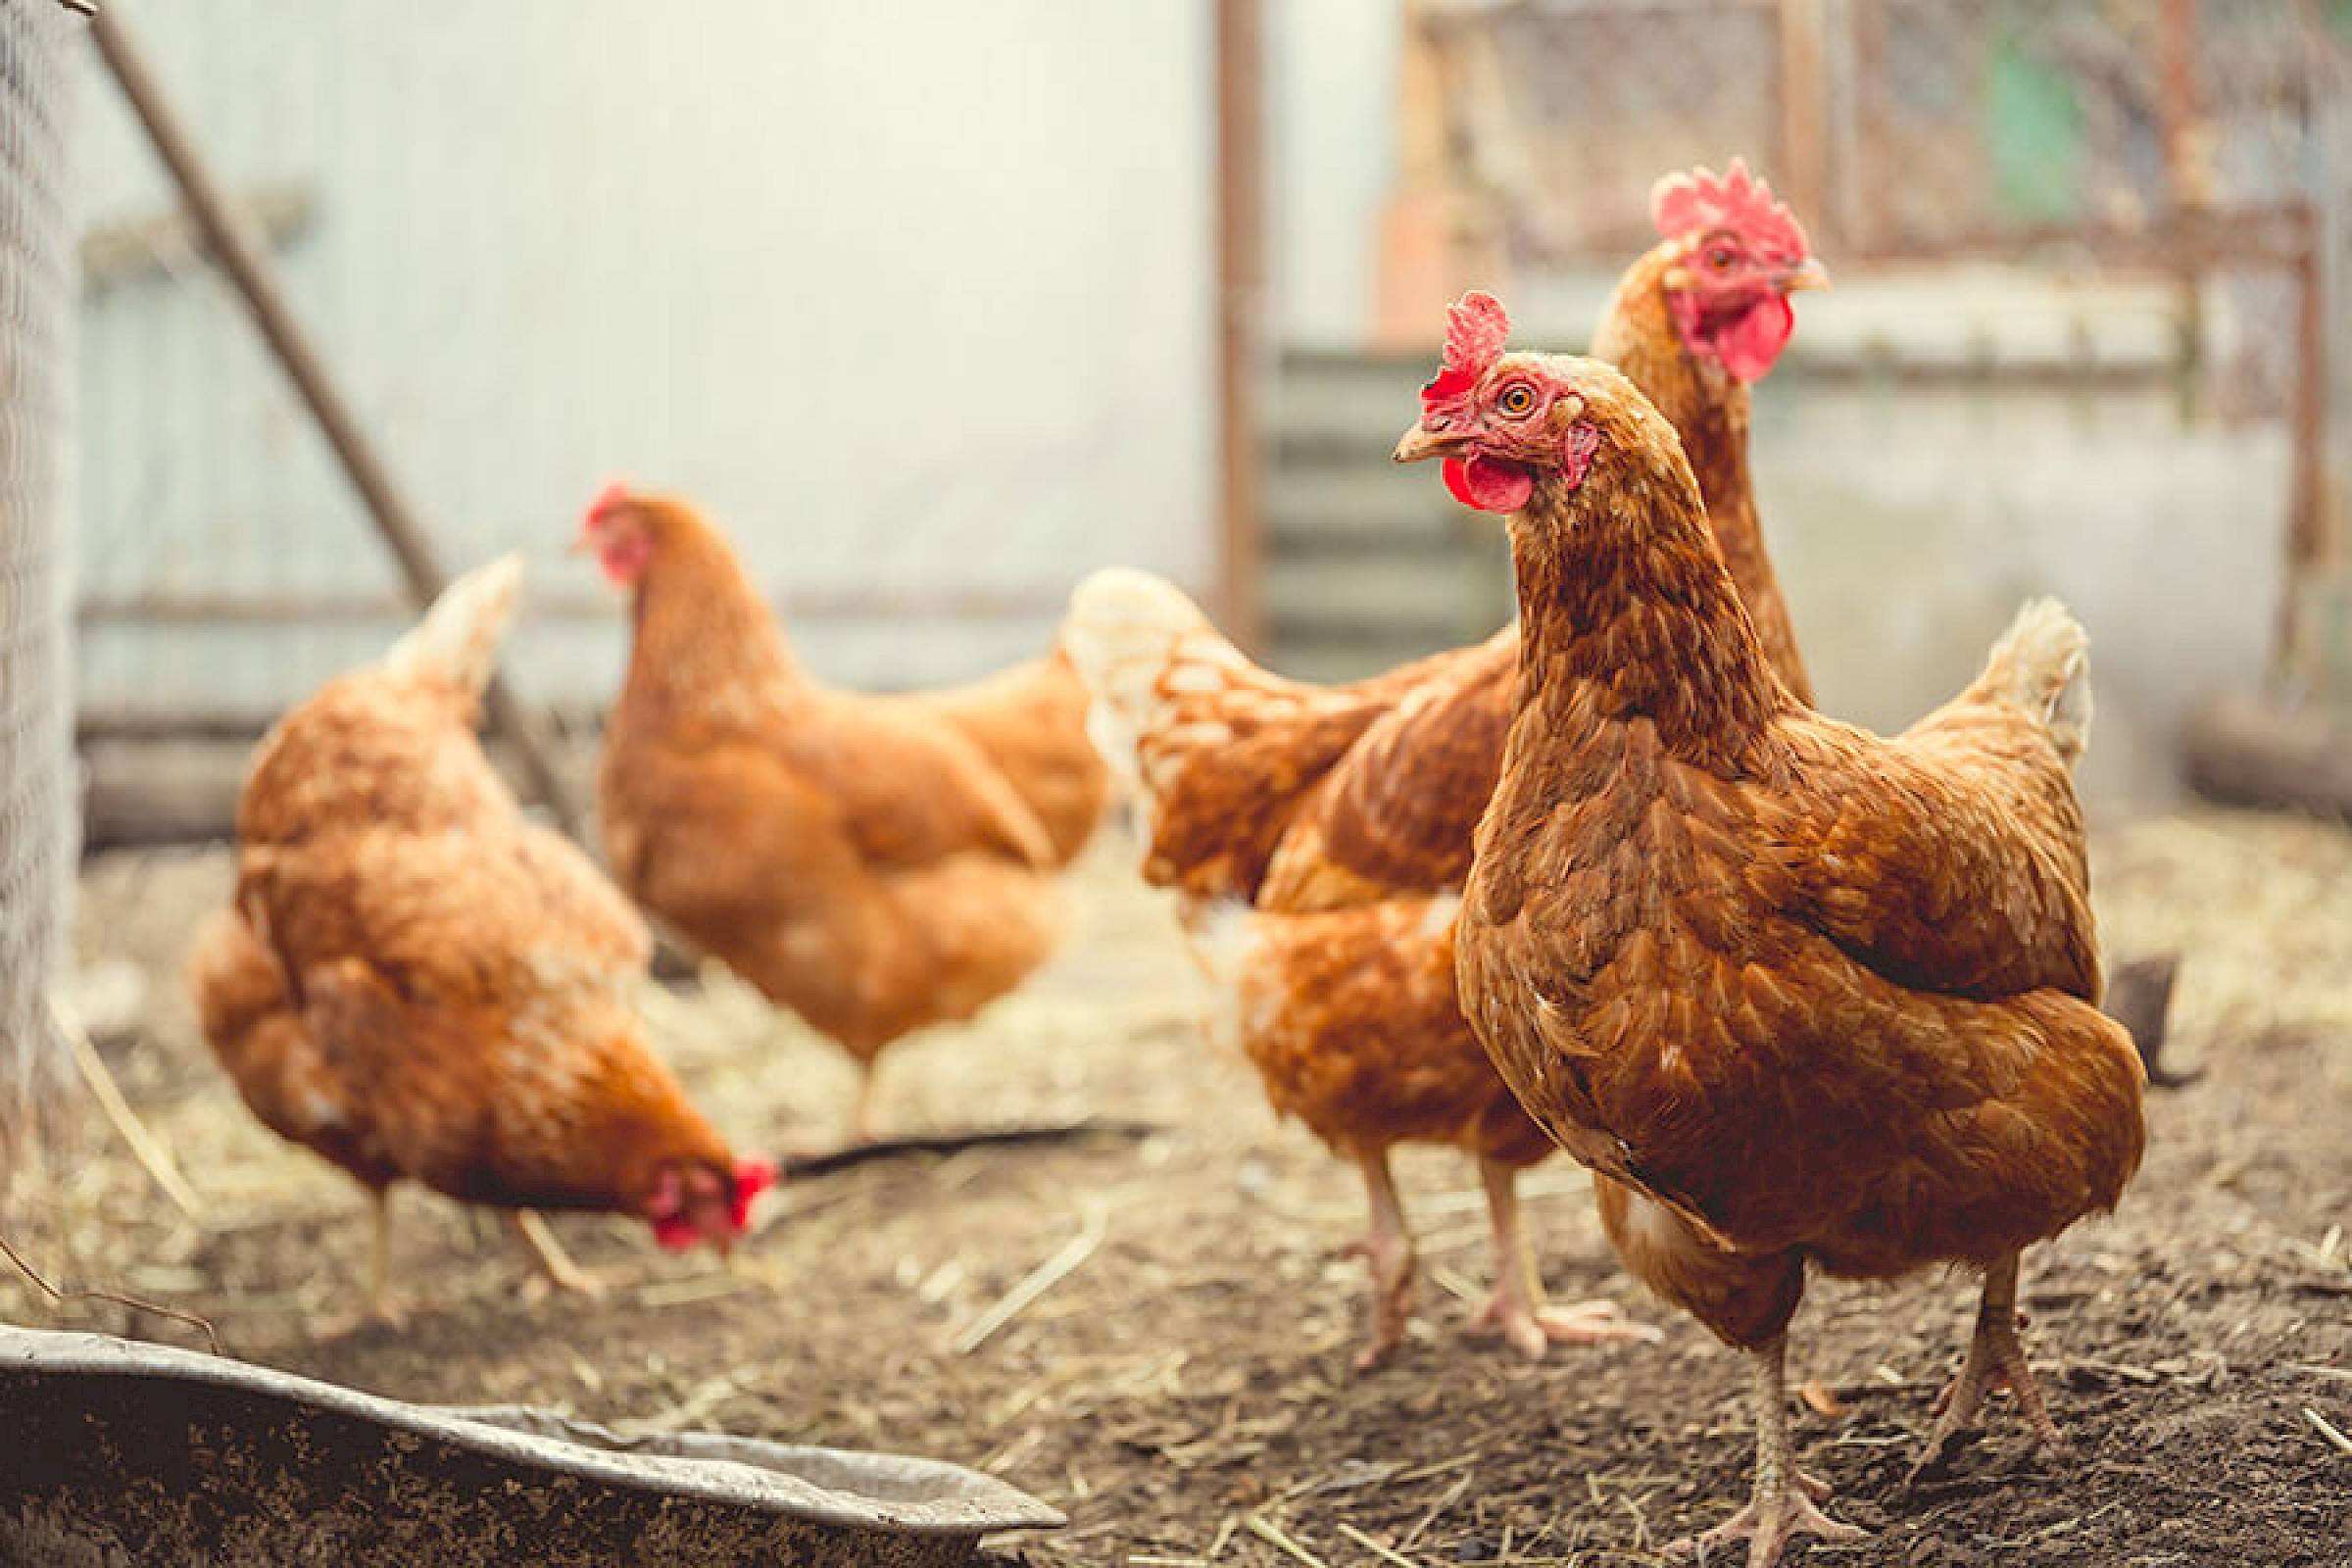 Vier kippen in een kippenren lopen door elkaar op een strooien ondergrond.